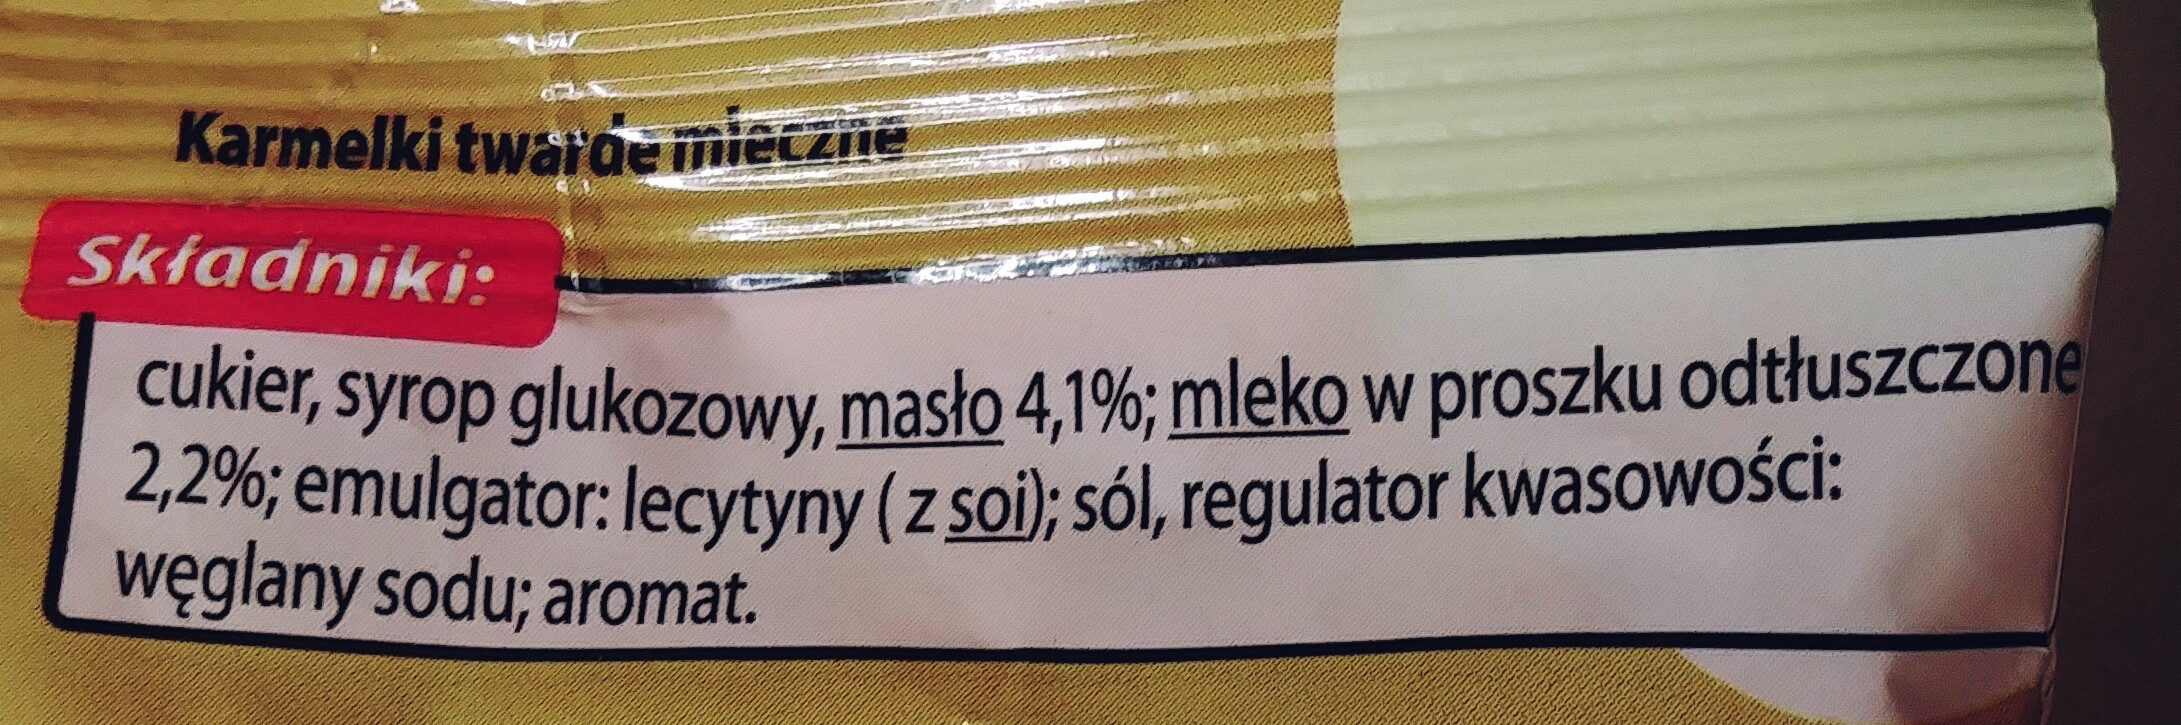 Karmelki twarde mleczne - Ingredients - pl